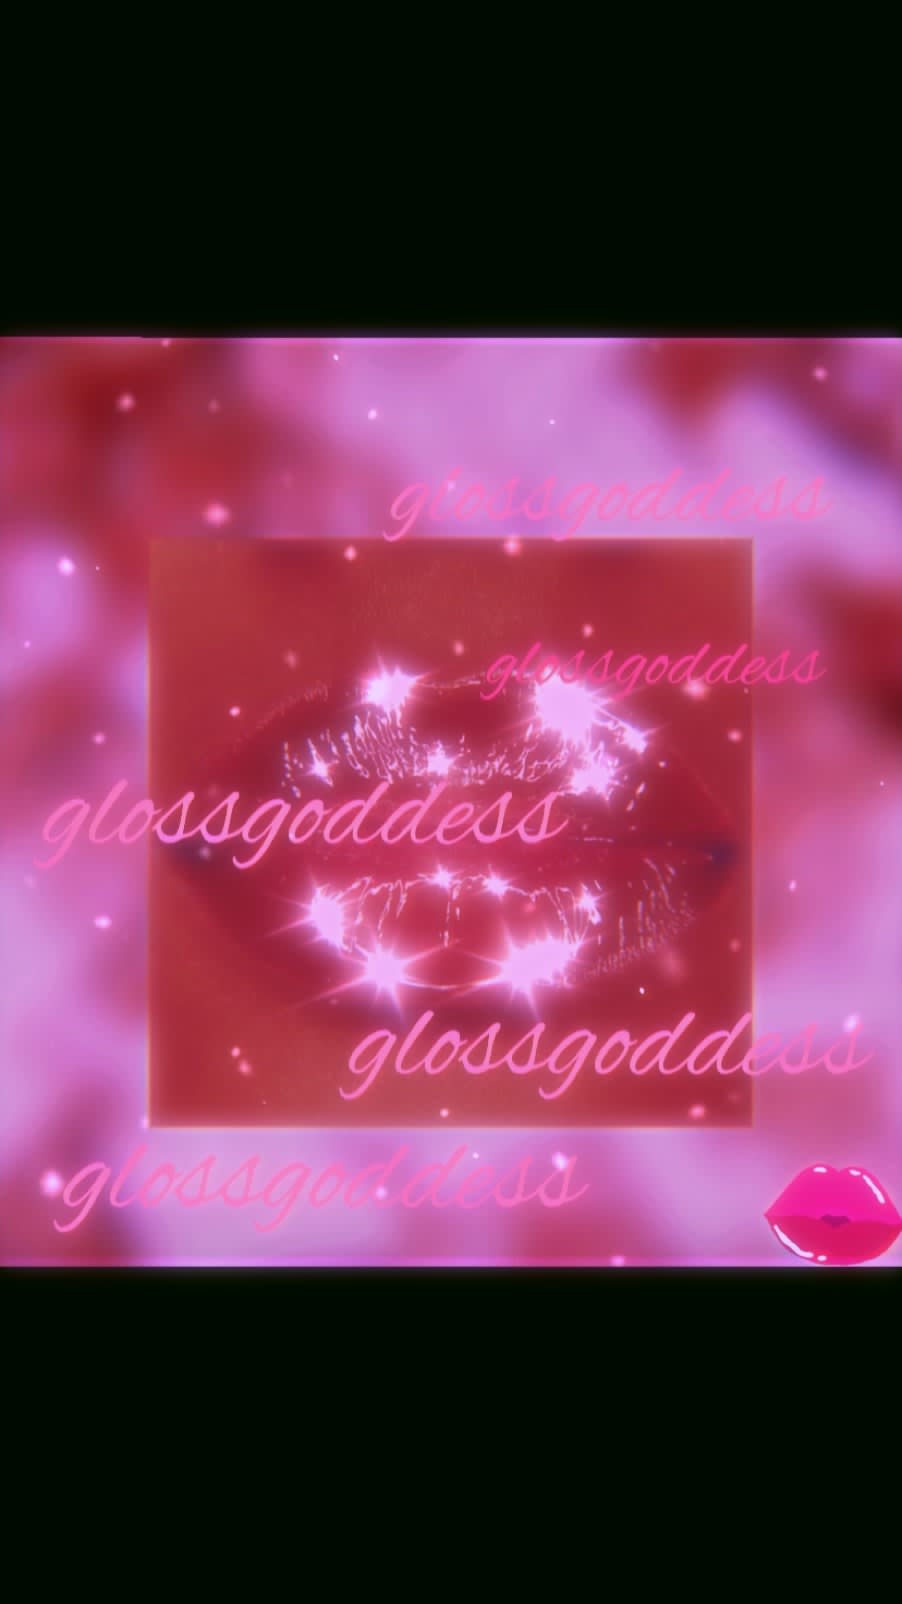 Gloss Goddess